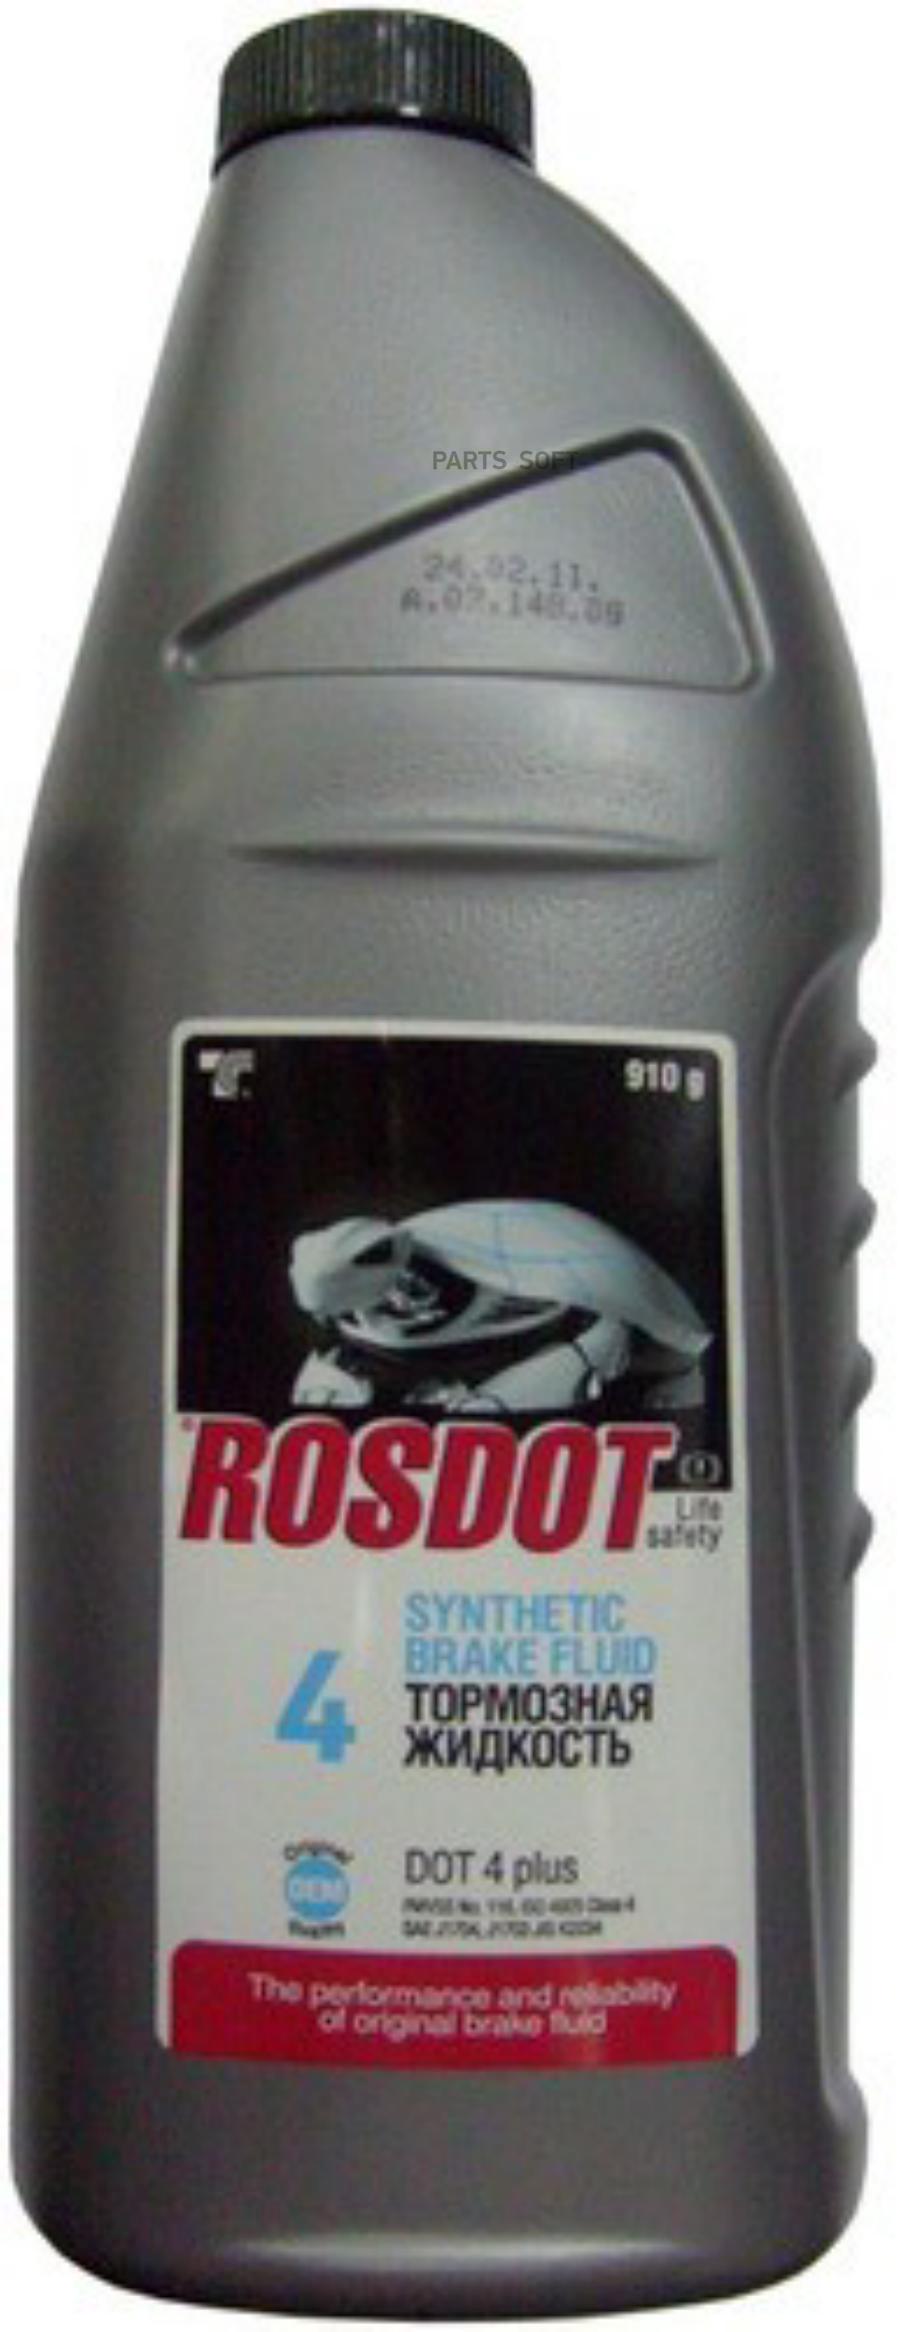 Тормозная жидкость ROSDOT 430101н03 DOT-4